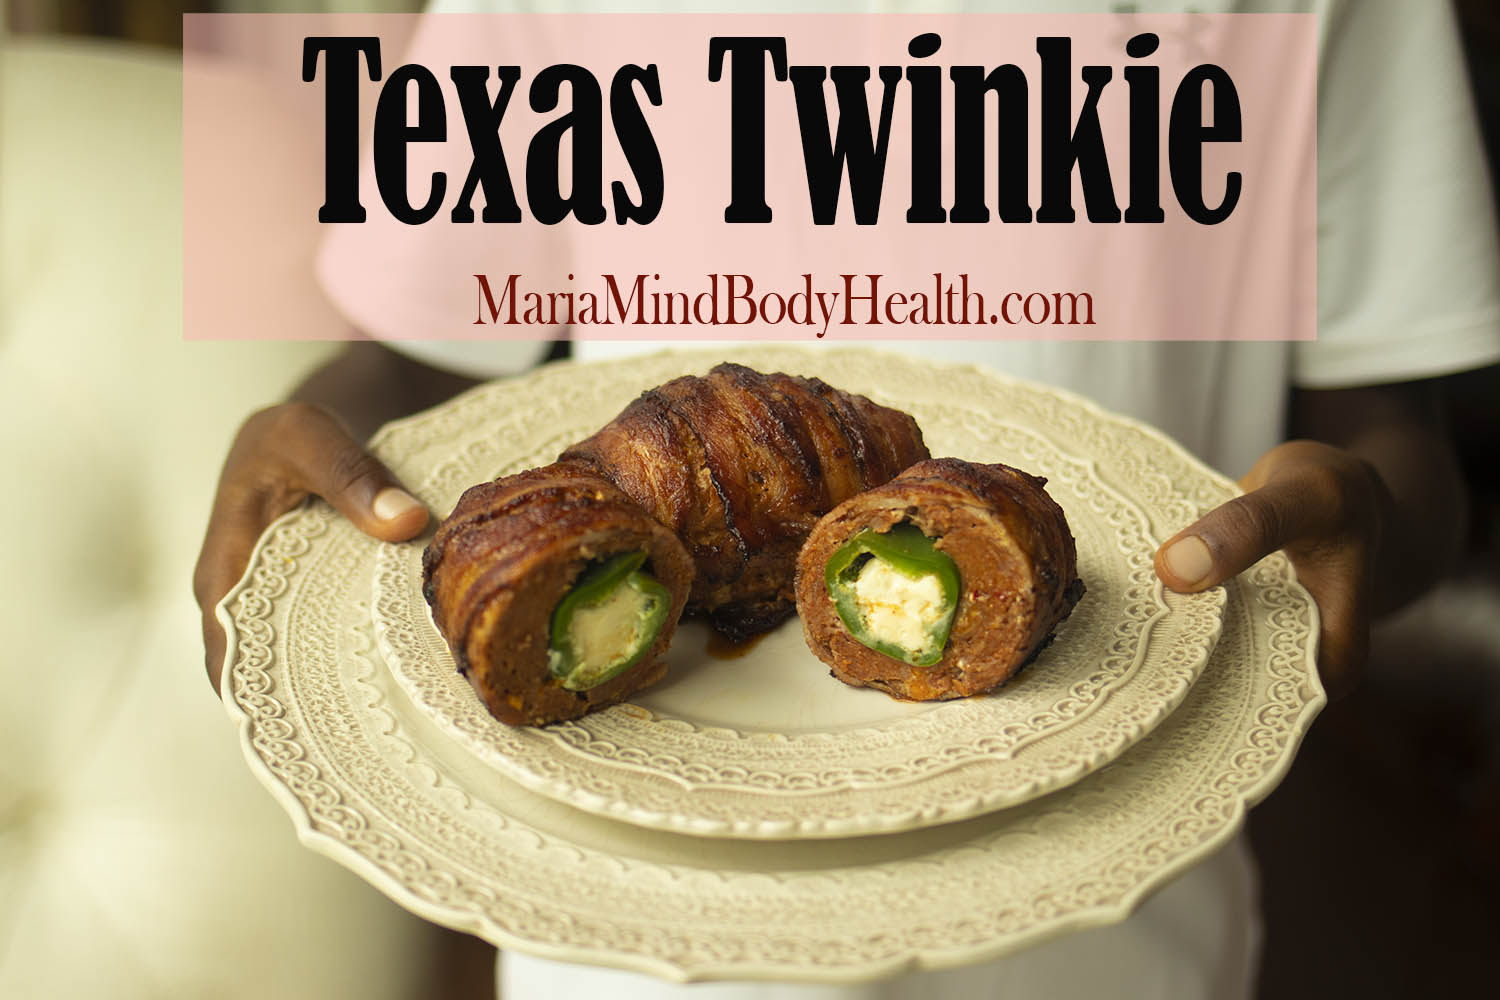 Texas Twinkie